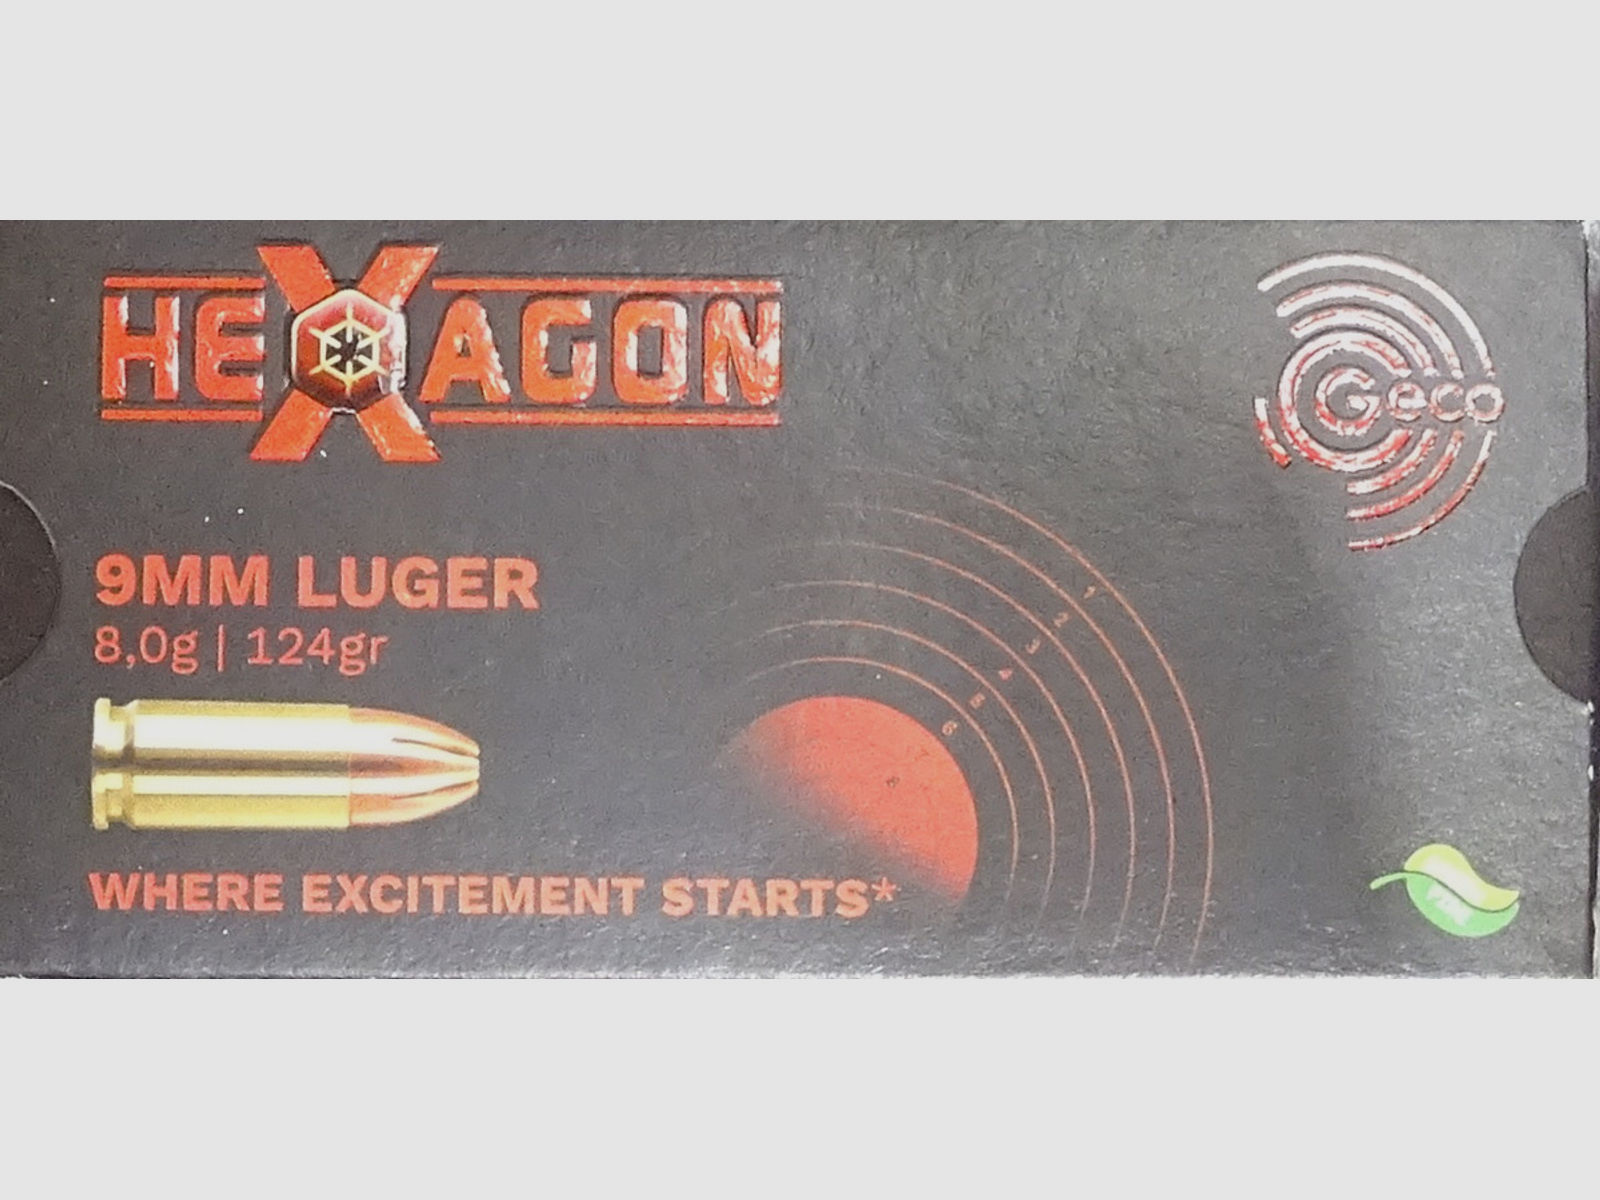 Geco 9mm luger HEXAGON 124grs - 1000 Schuss